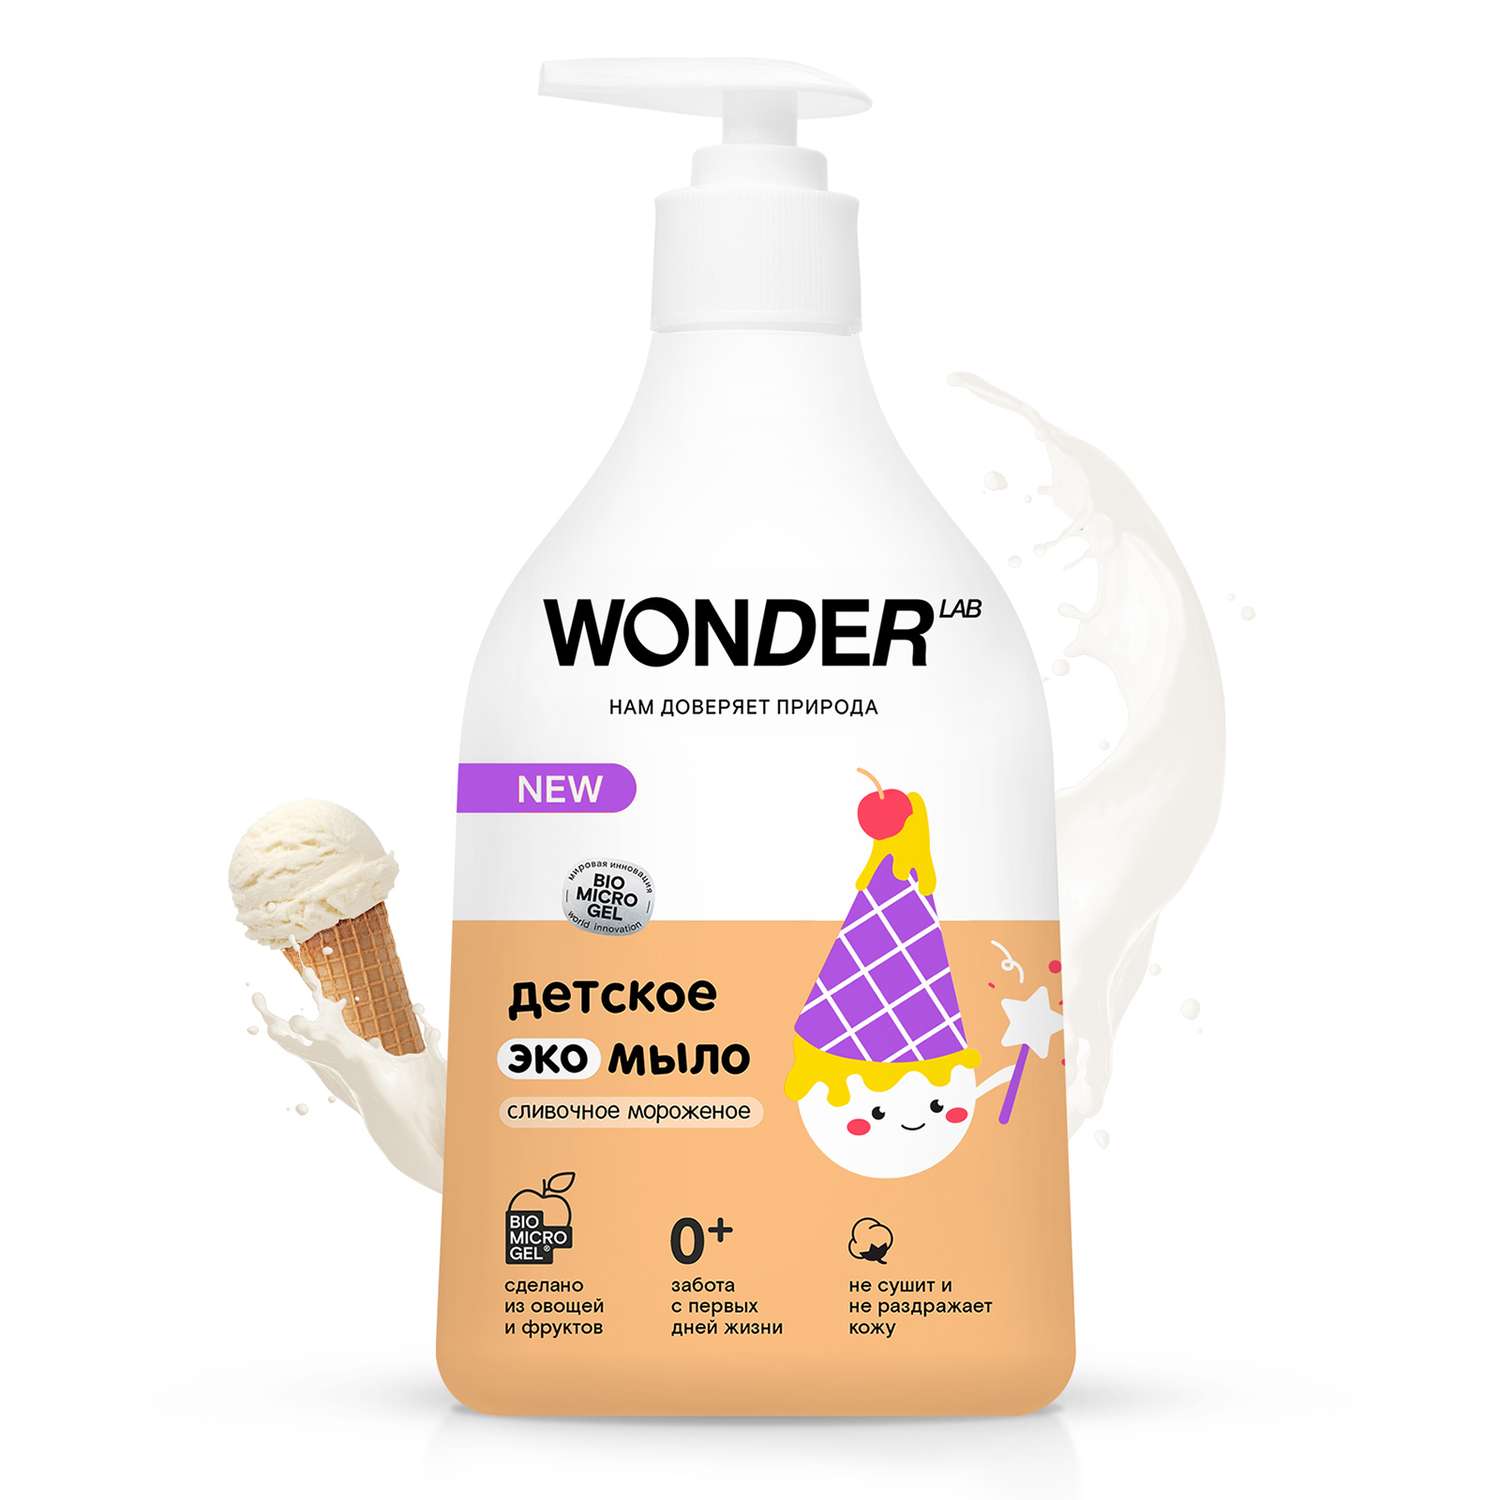 Мыло WONDER Lab с ароматом сливочного мороженого детское 540мл - фото 2